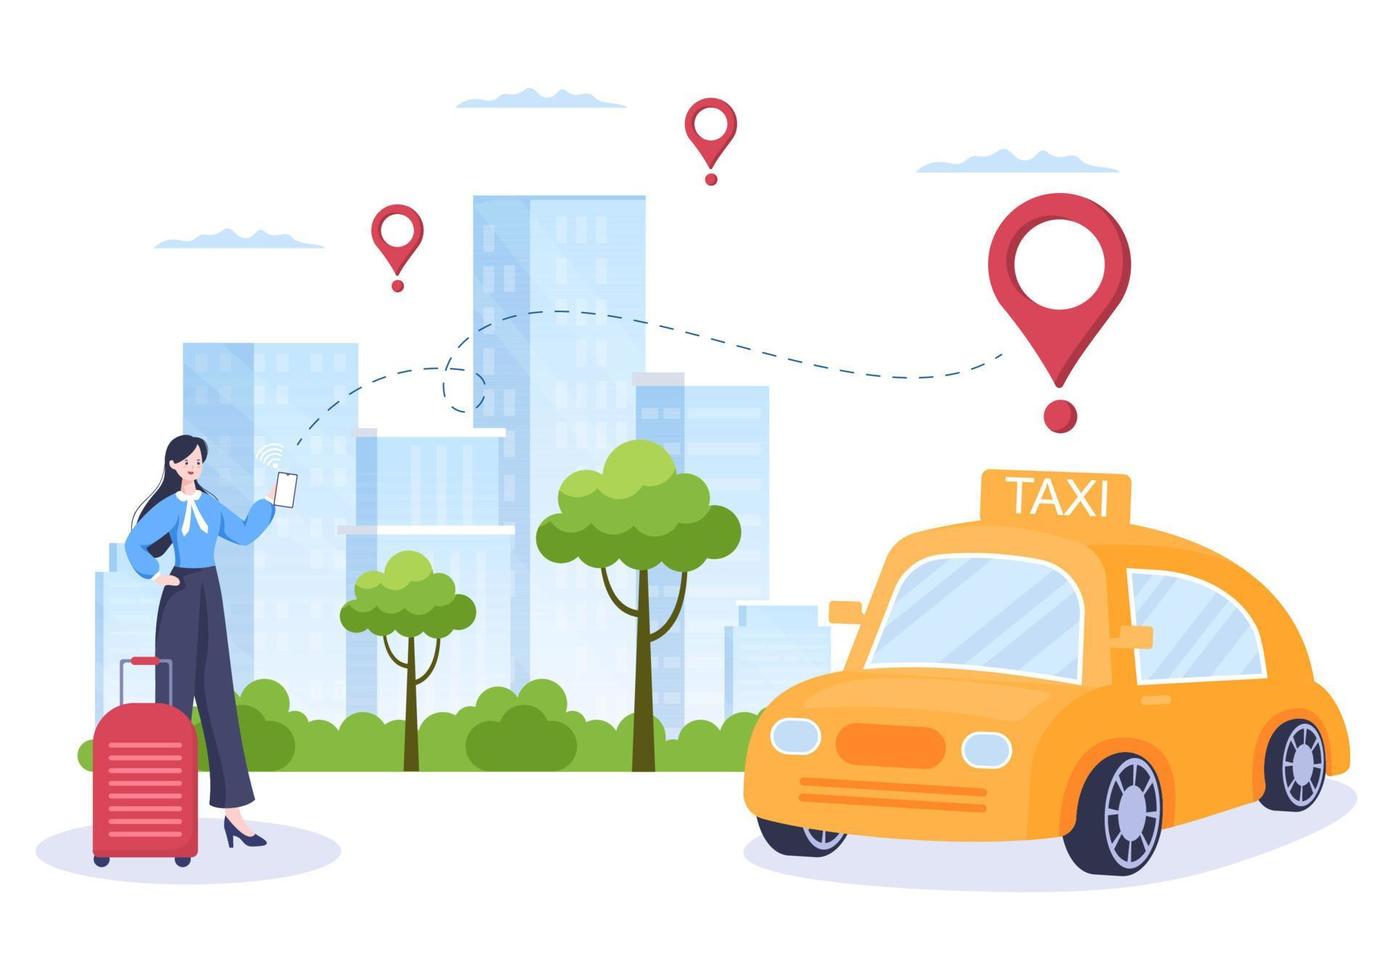 Online-Taxibuchung Reiseservice flache Designillustration über mobile App auf dem Smartphone bringen Sie jemanden zu einem Ziel, das für Hintergrund, Poster oder Banner geeignet ist vektor